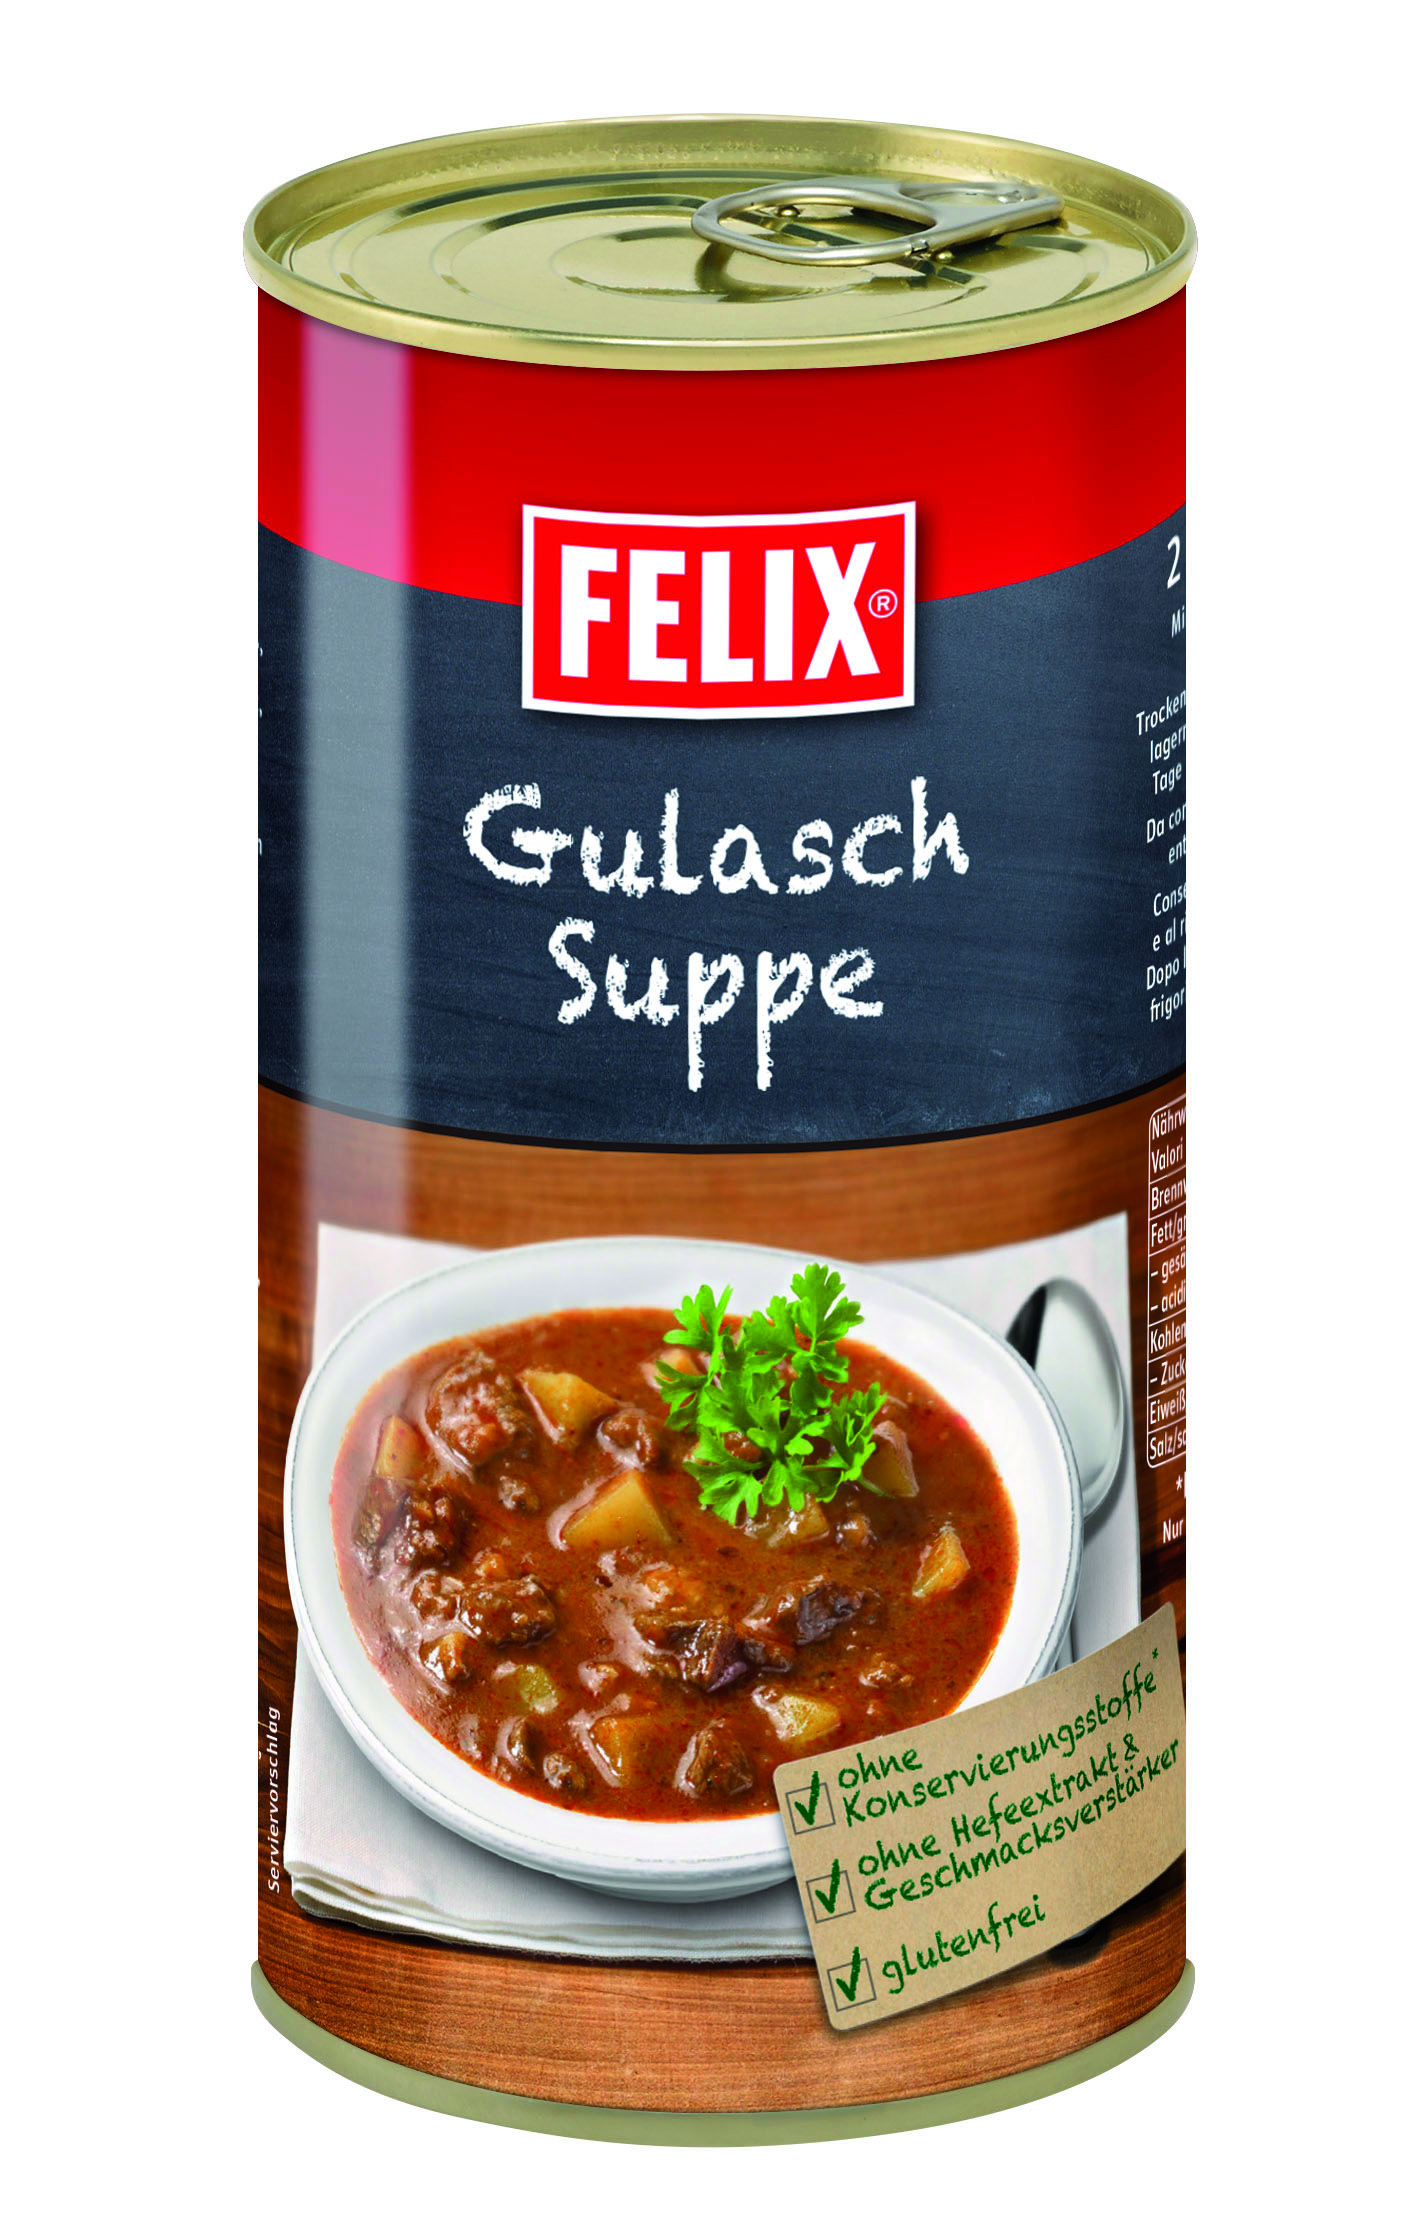 Felix Gulaschsuppe